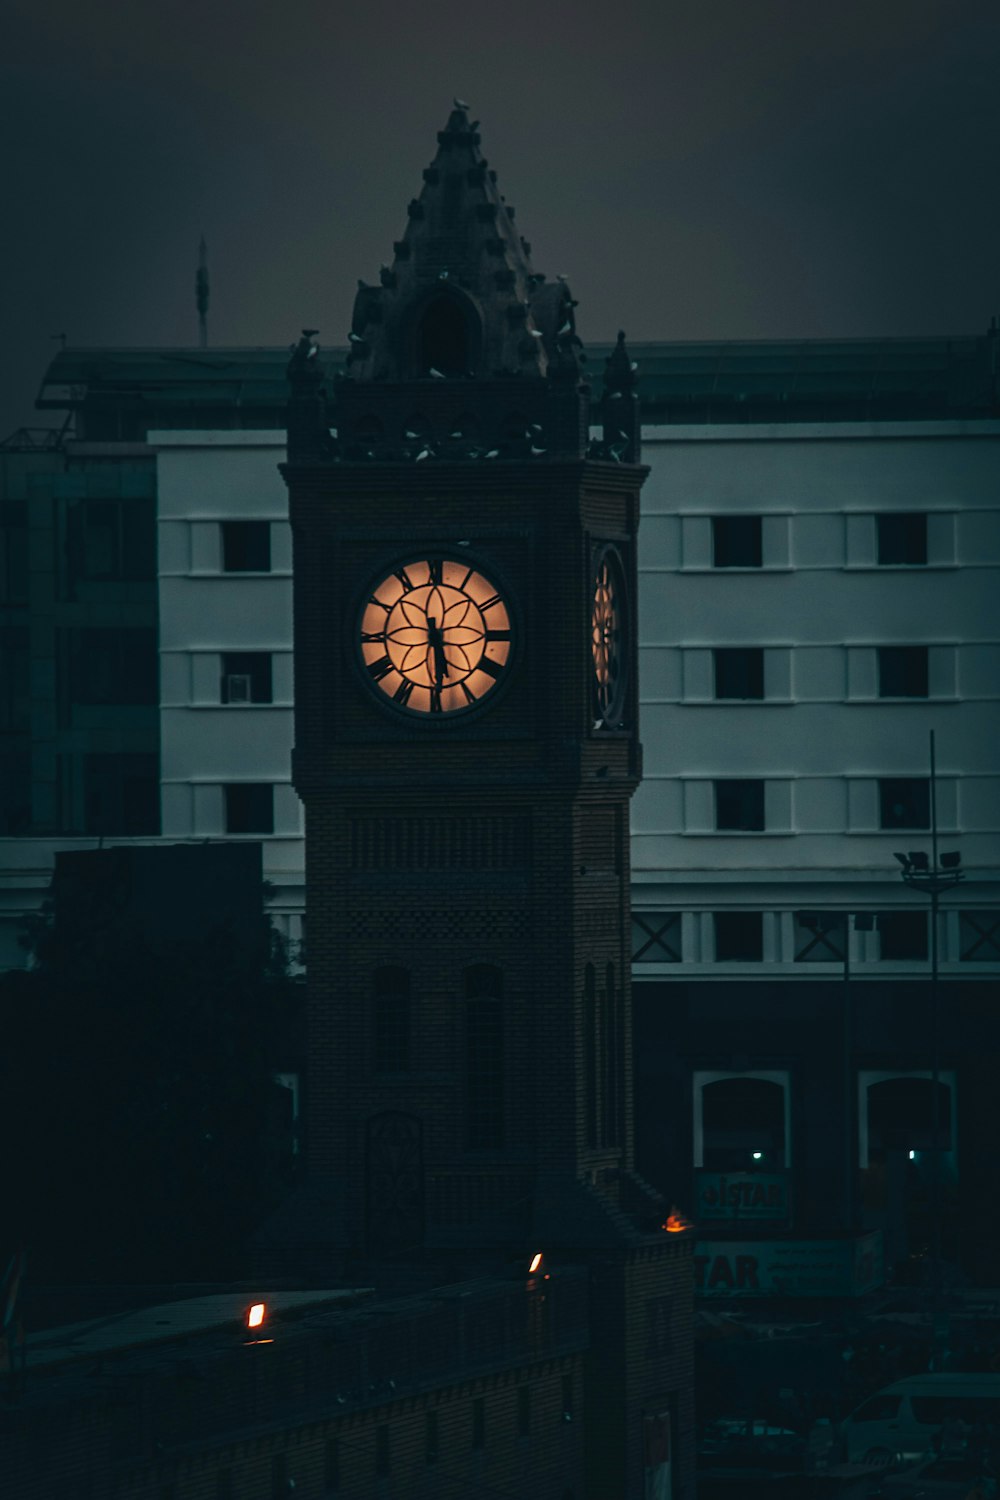 una torre de reloj iluminada en la oscuridad